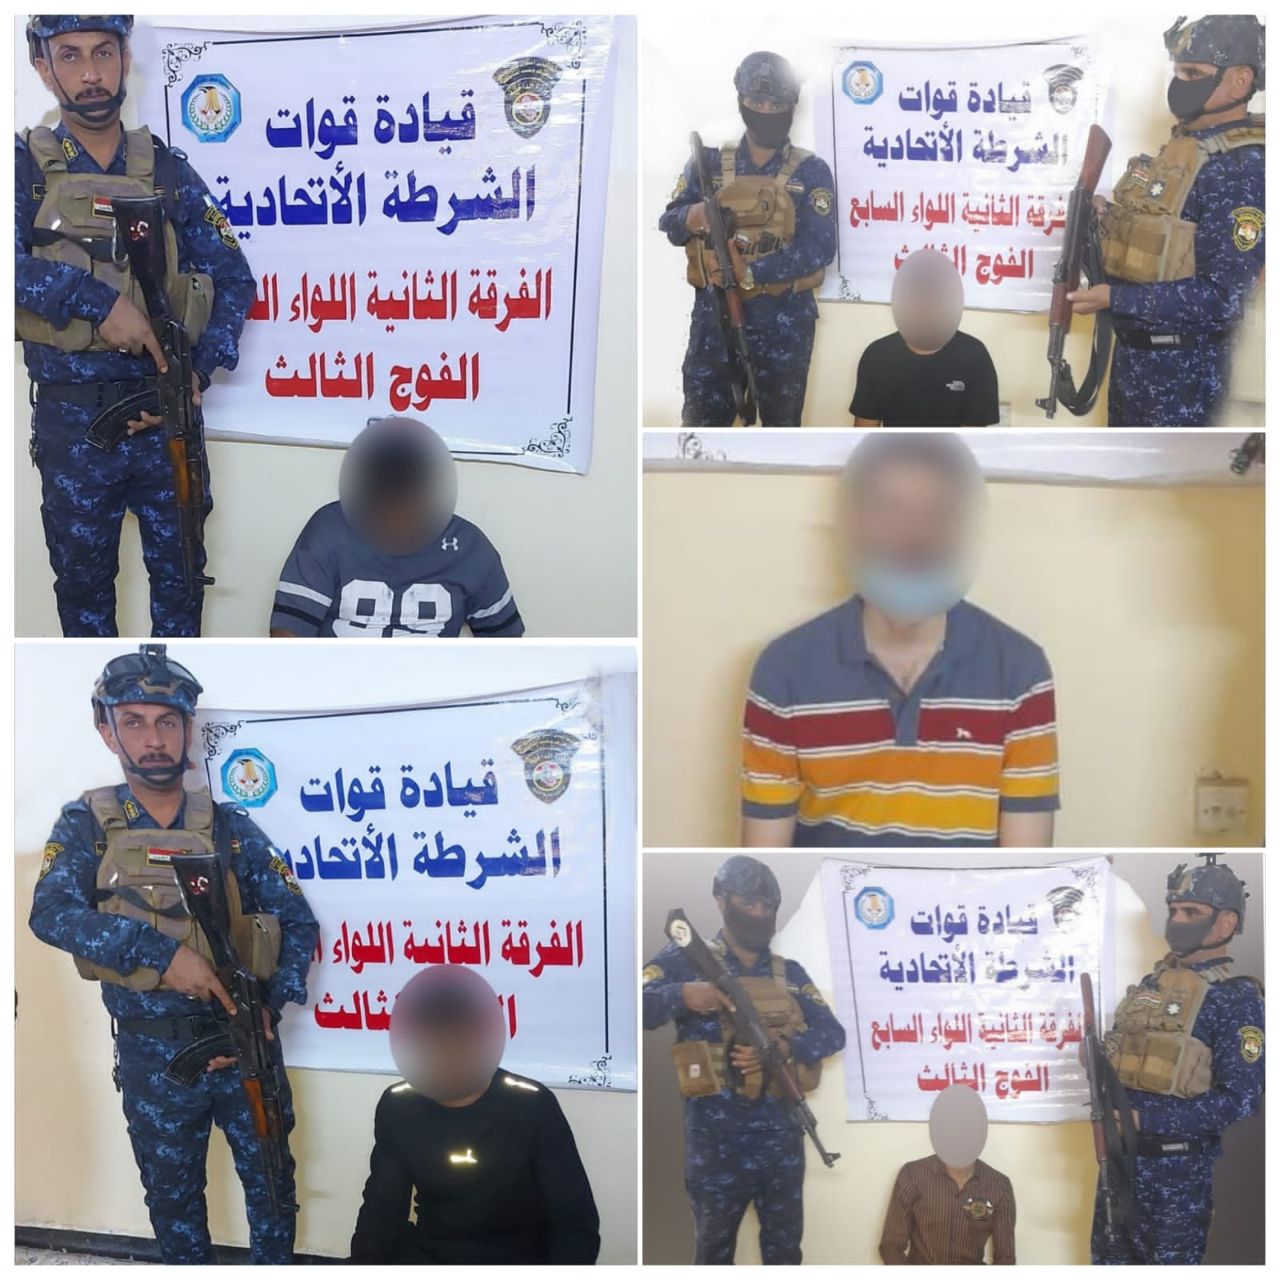 الشرطة الاتحادية تلقي القبض على 5 متهمين بالسرقة والتزوير في بغداد